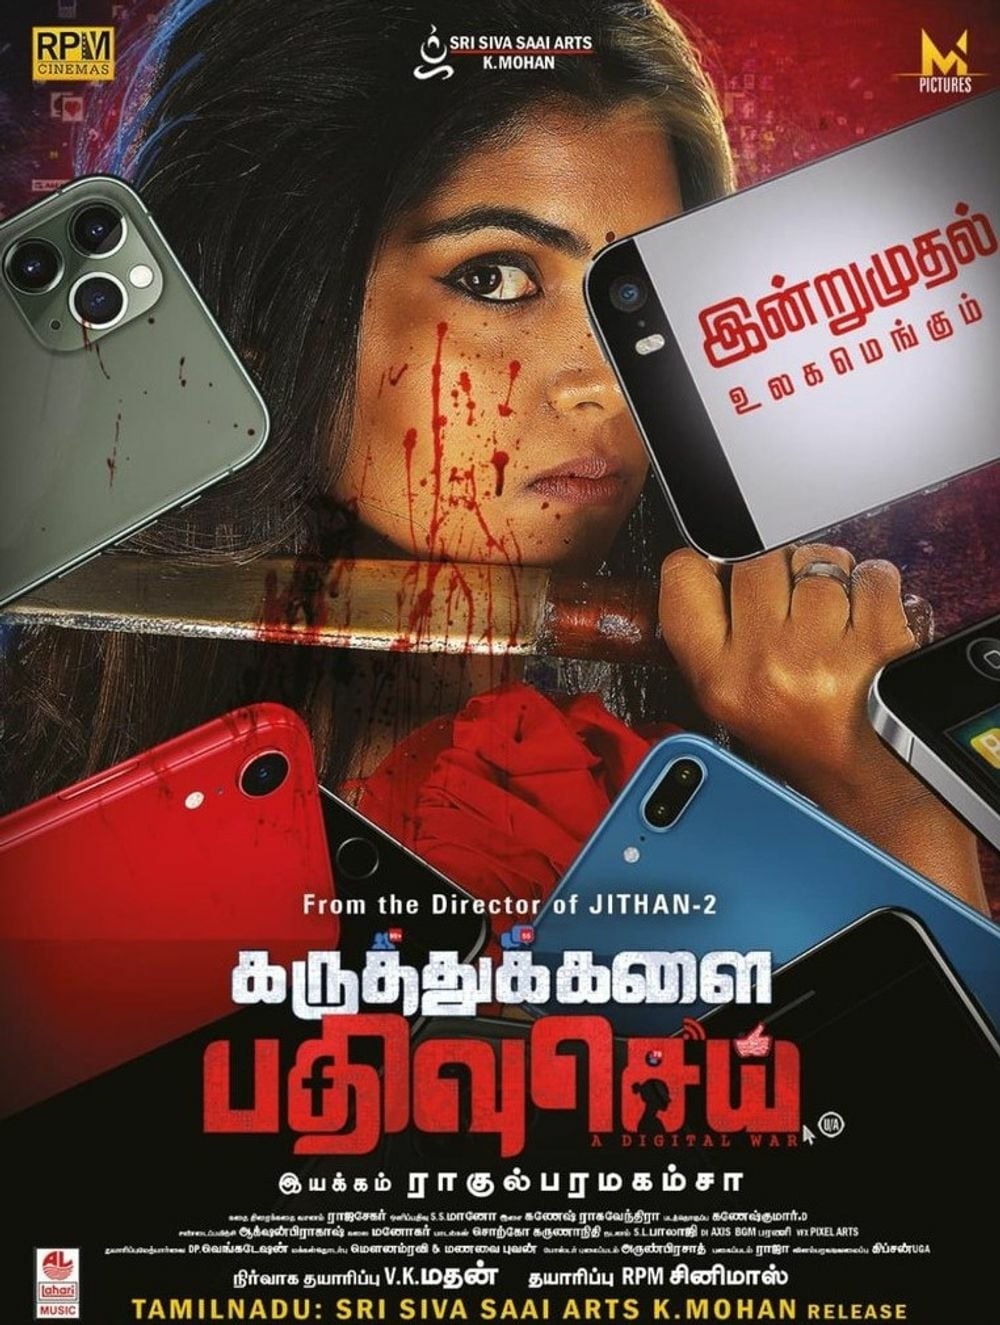 Poster for the movie "Karuthukalai Pathivu Sei"